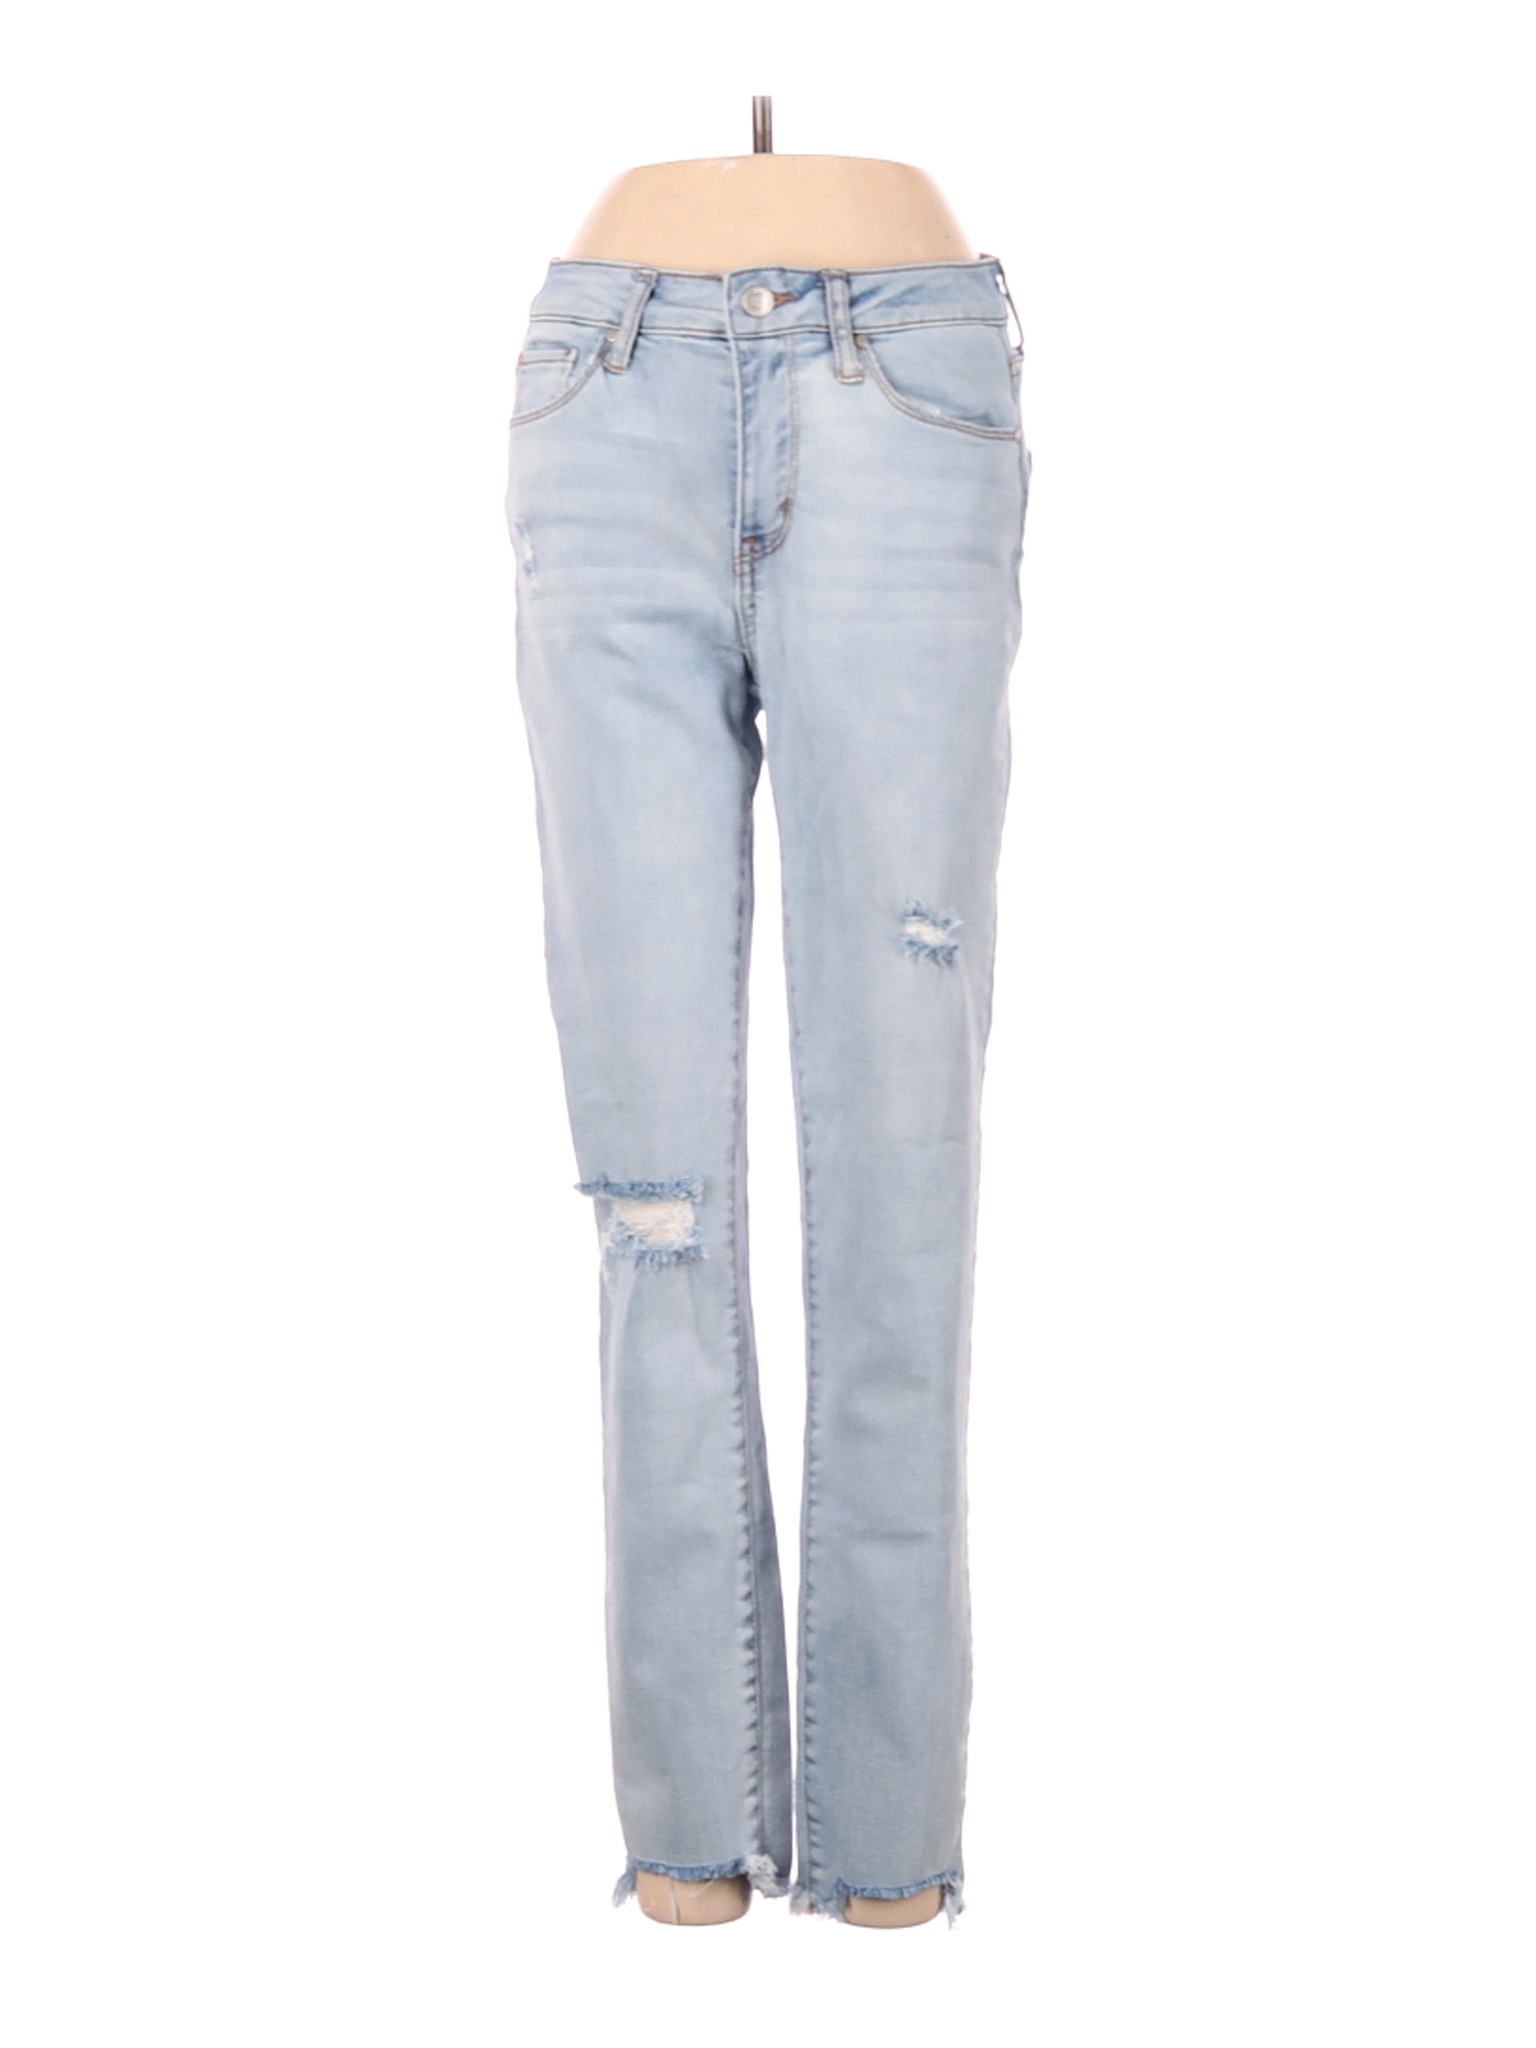 RSQ JEANS Women Blue Jeans 25W | eBay